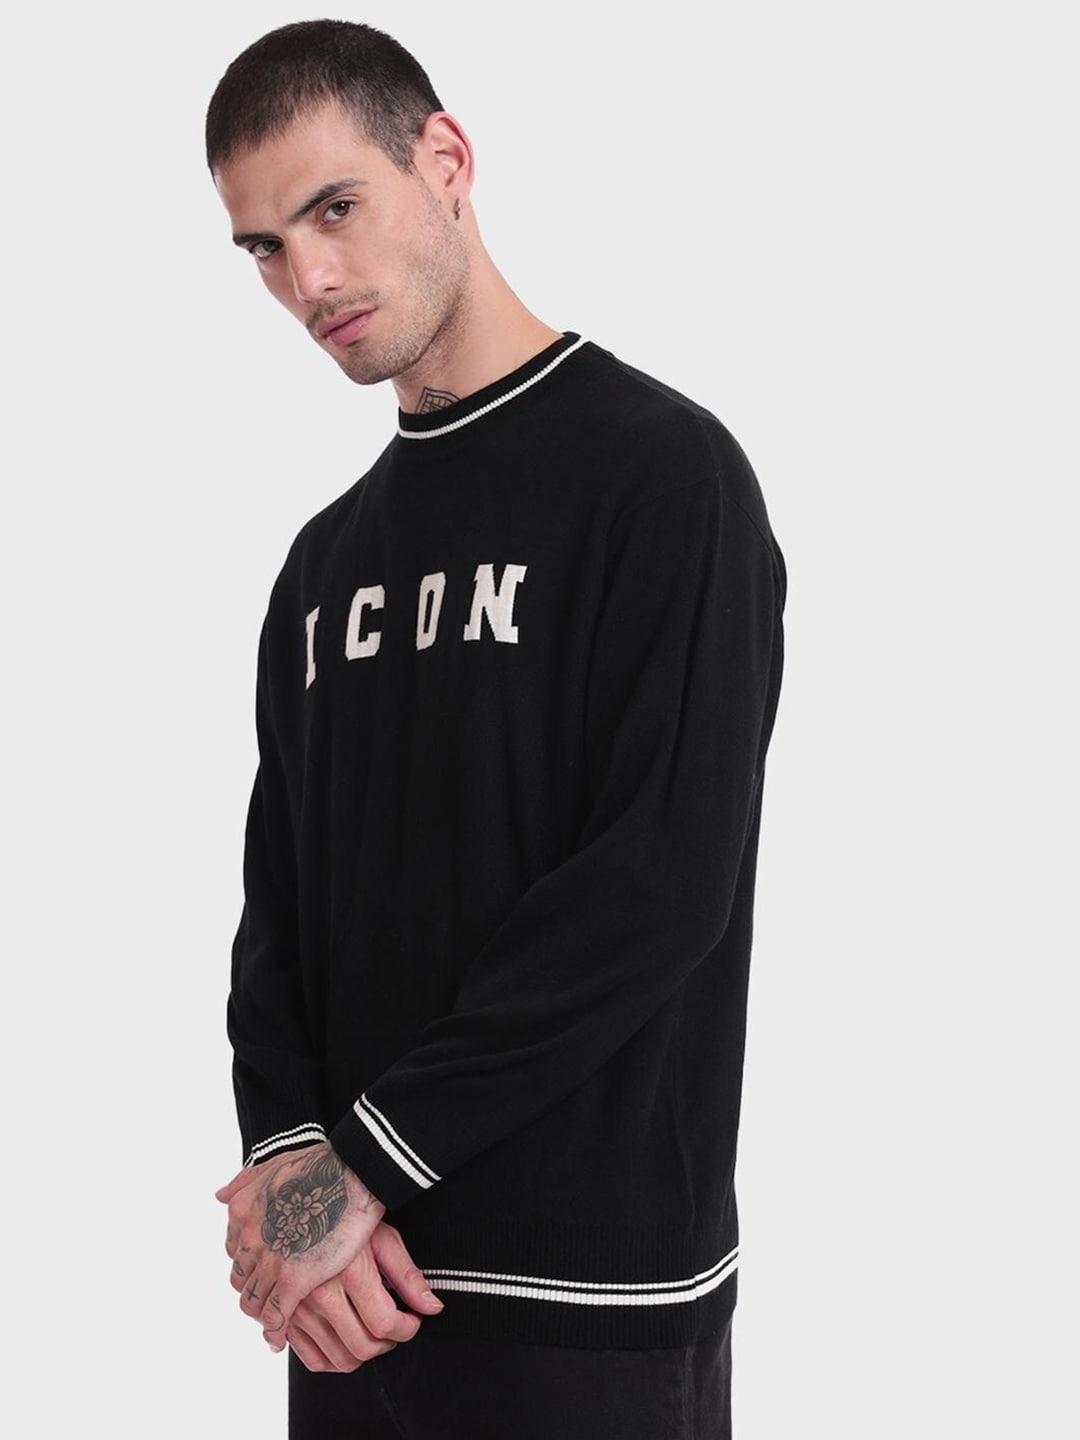 bewakoof-men-jet-black-icon-typography-oversized-sweater